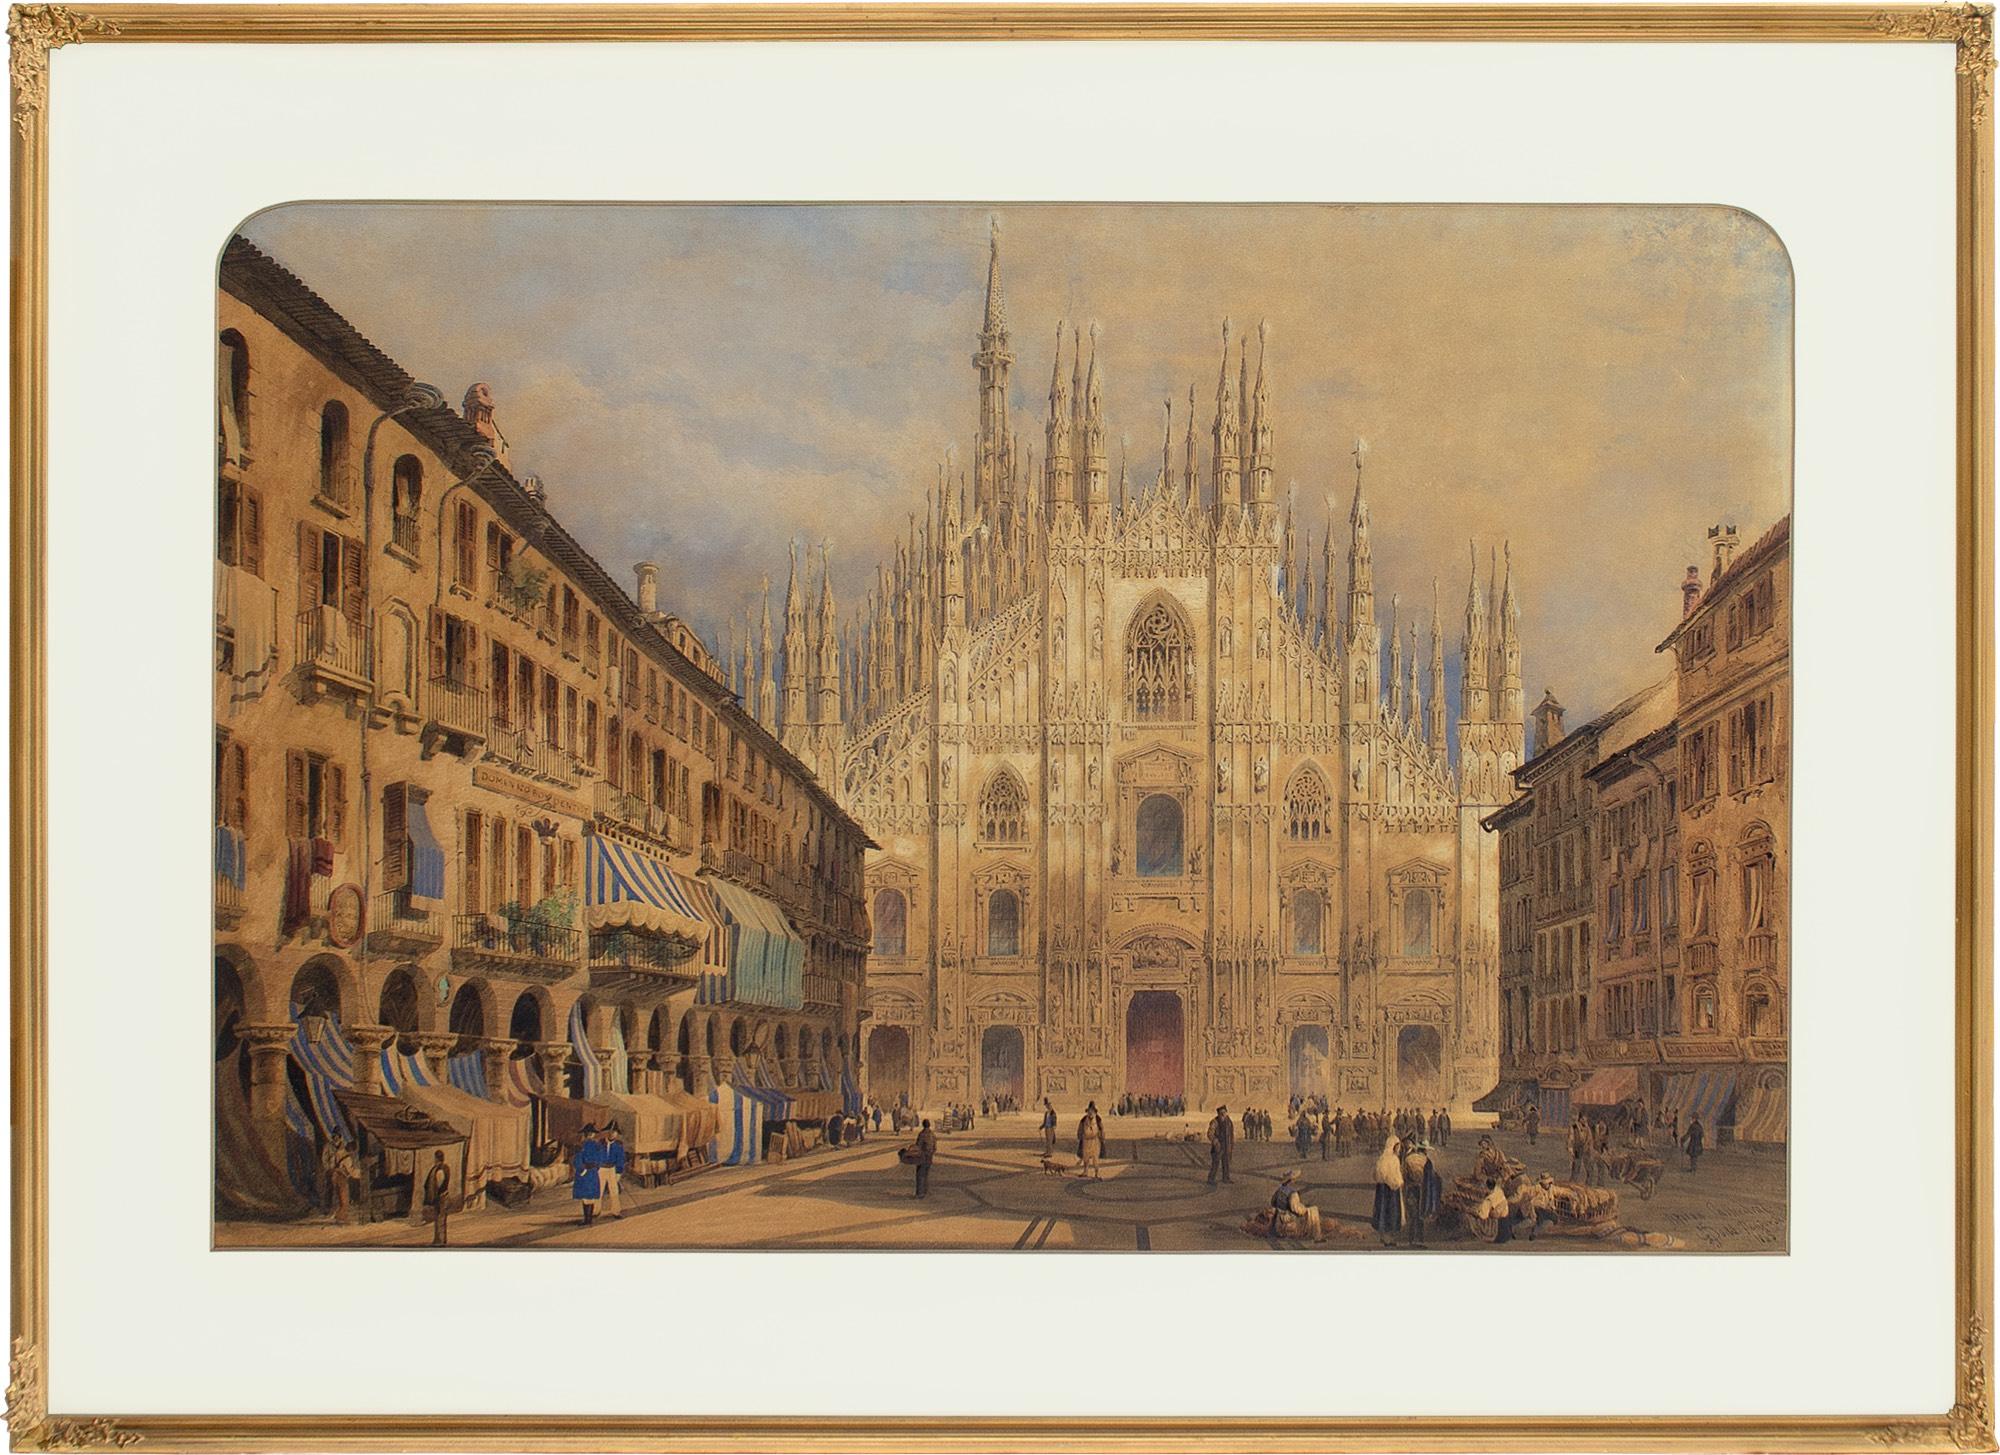 Dieses Aquarell des britischen Künstlers Joseph Josiah Dodd (1809-1880) aus dem 19. Jahrhundert zeigt den Mailänder Dom in Italien.

Wie ein gotisches Ungetüm erhebt sich die majestätische Fassade des Mailänder Doms. Von unserem Standpunkt auf der